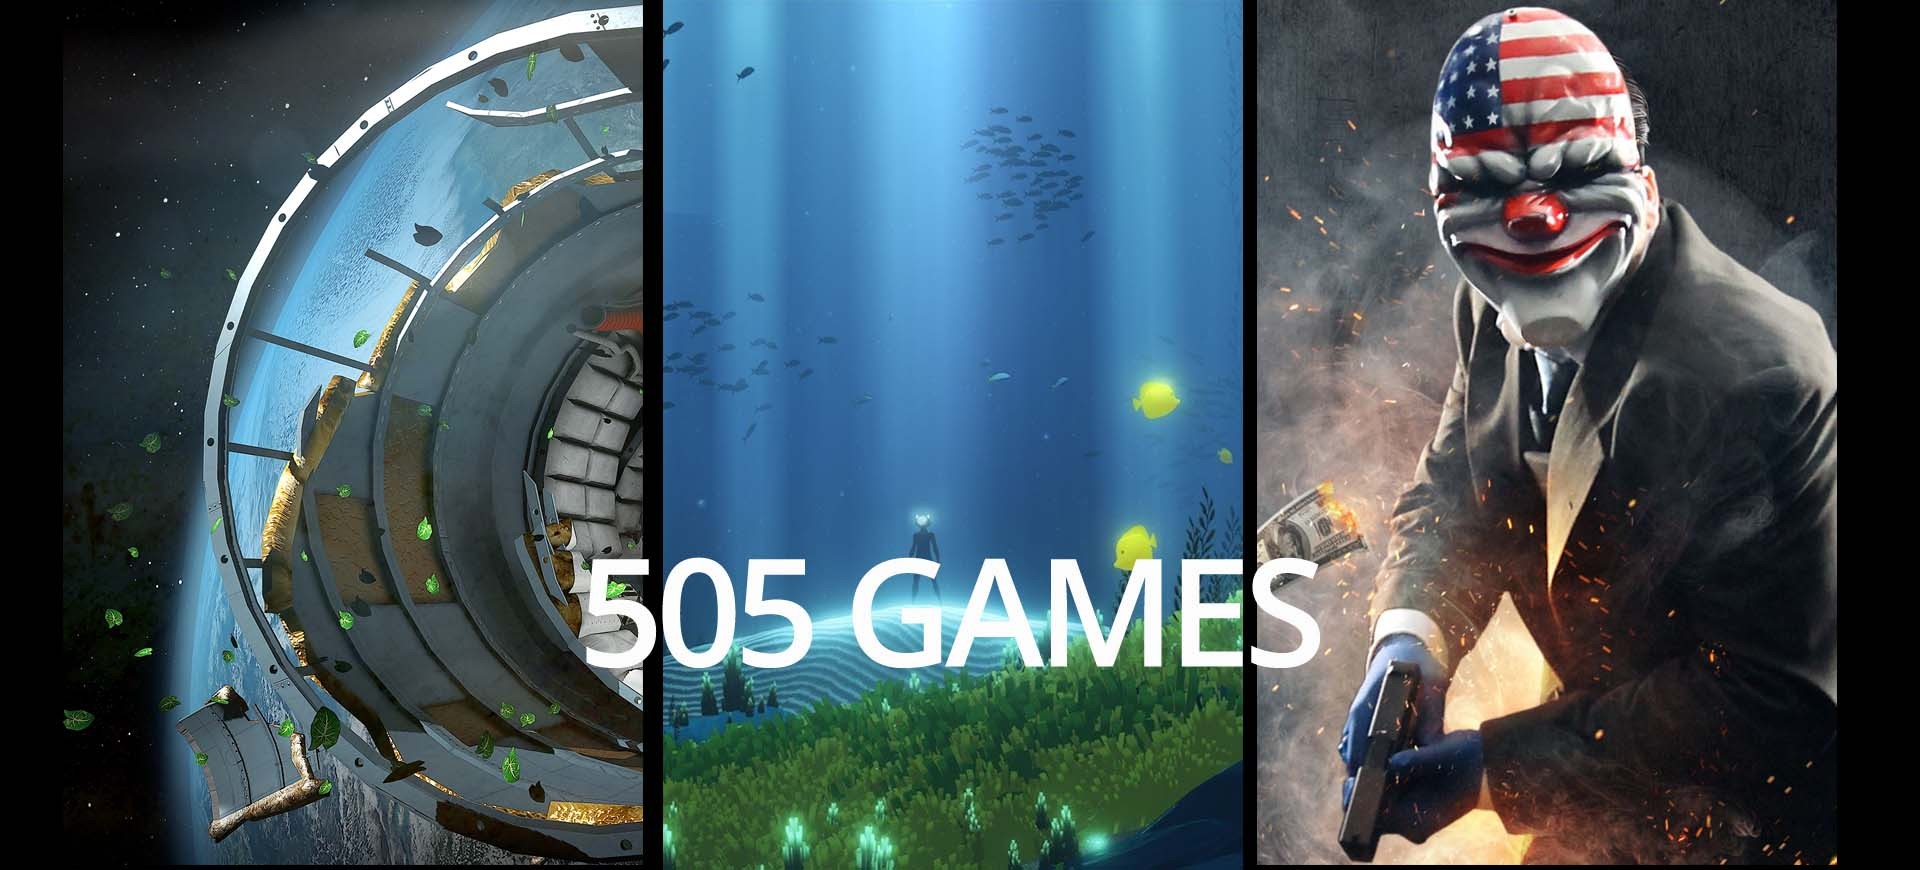 E3 2015: 505 Games - "Vị khách bí ẩn"